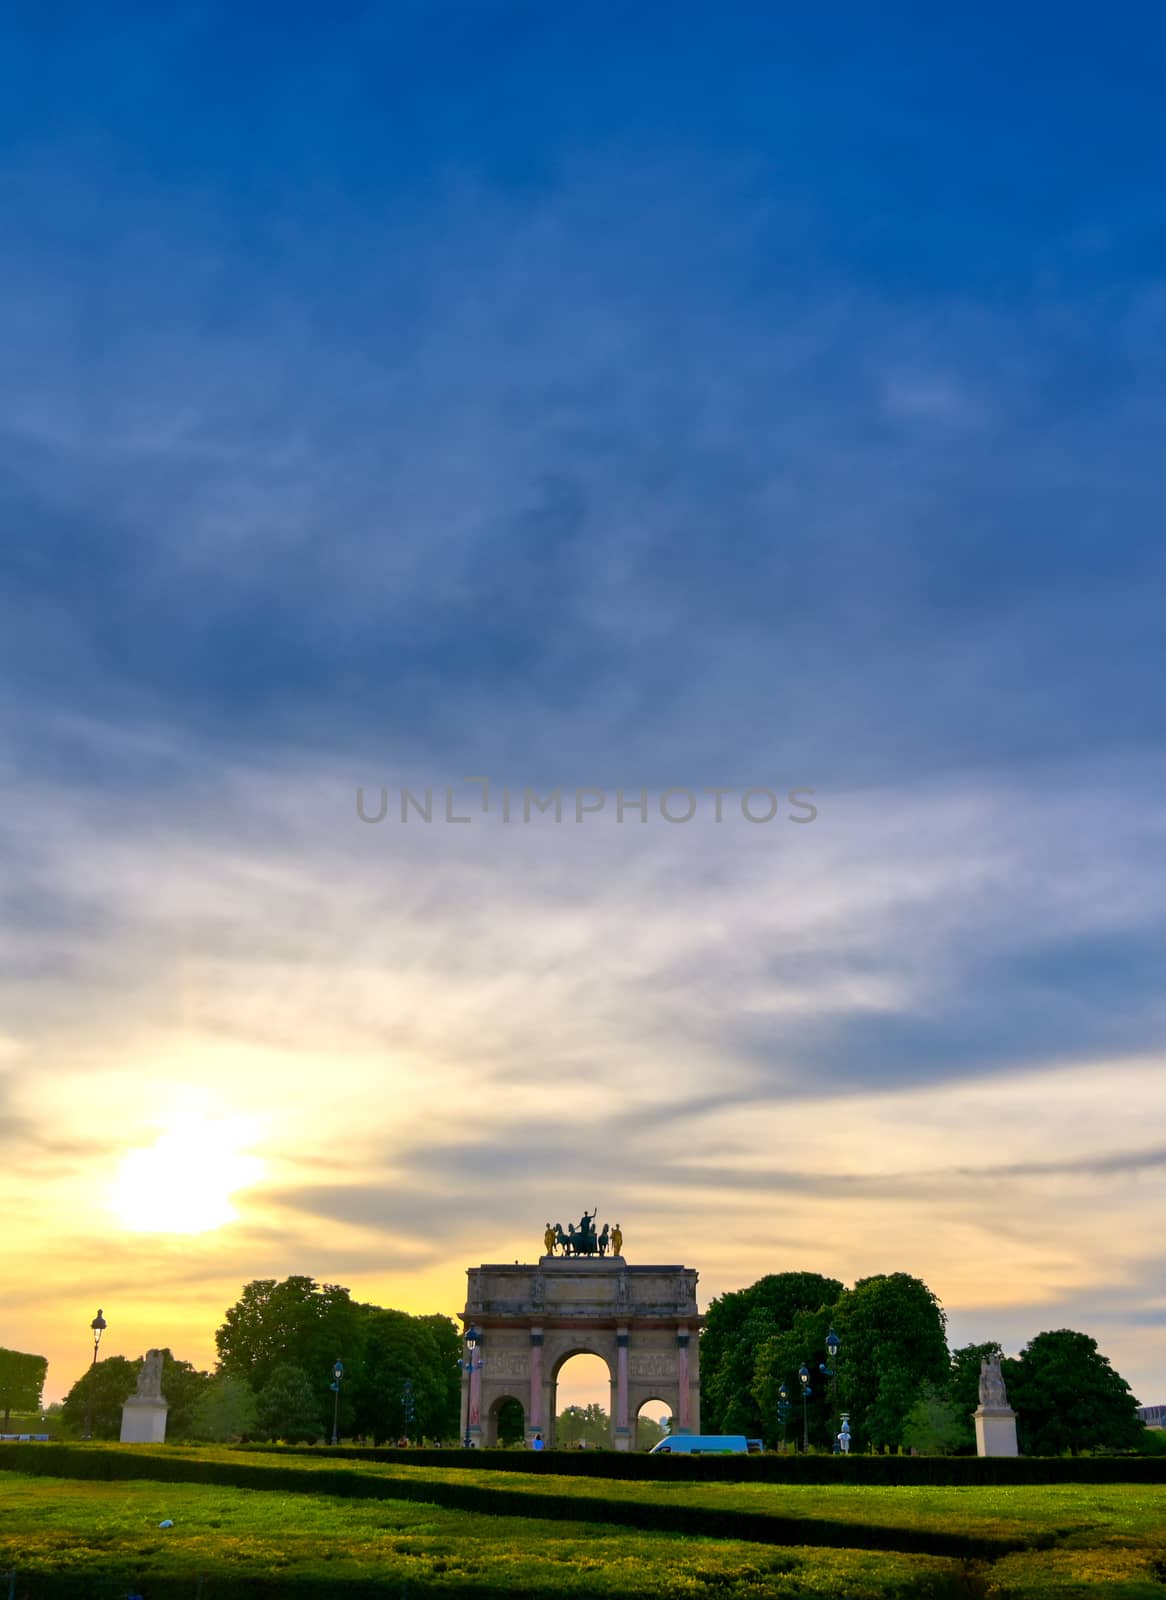 Arc de Triomphe du Carrousel in Paris, France by jbyard22